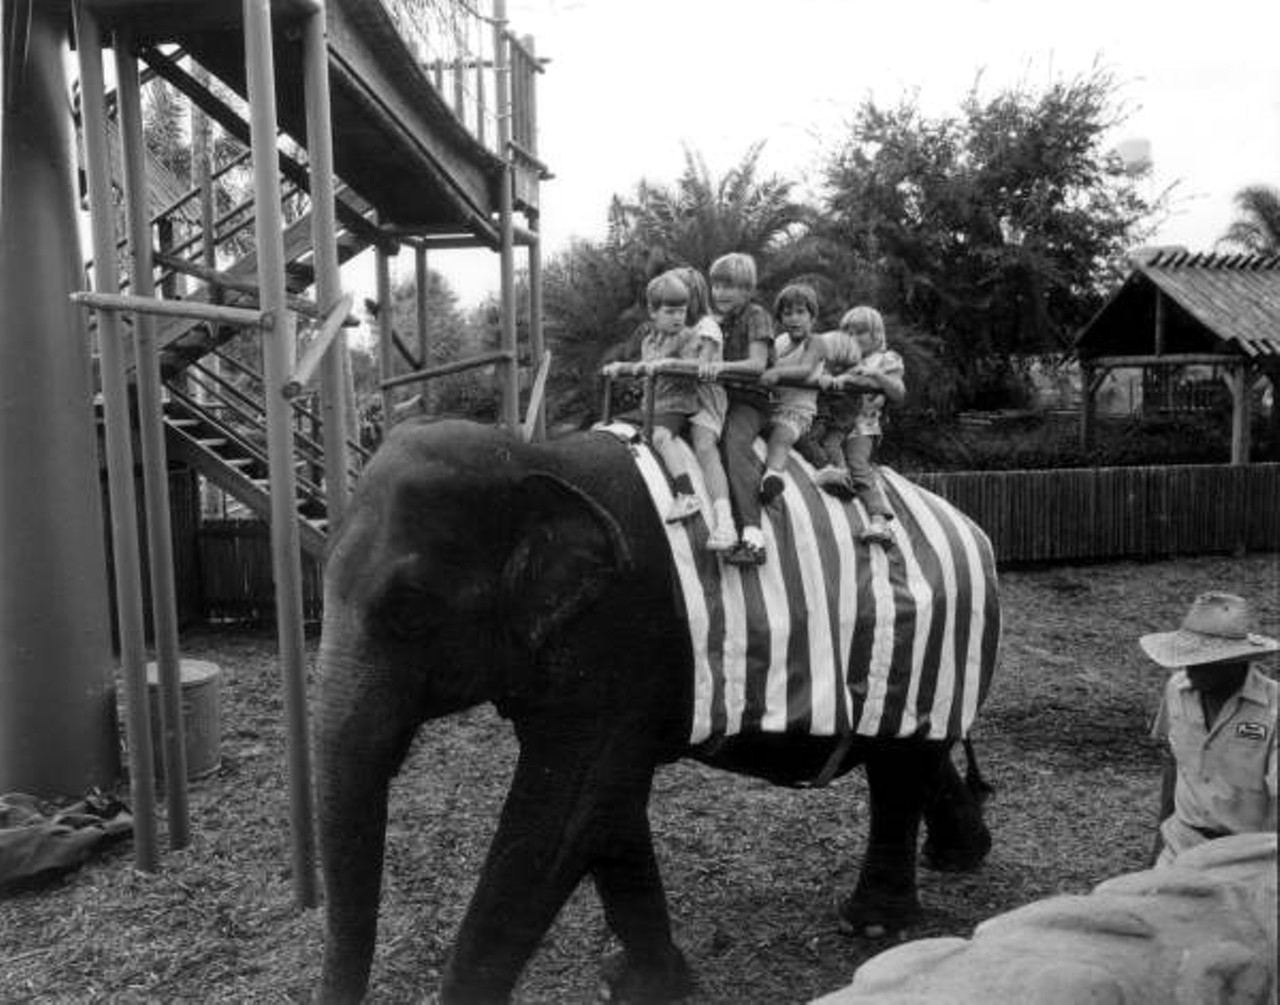 Children on an elephant ride at Busch Gardens. 1973.